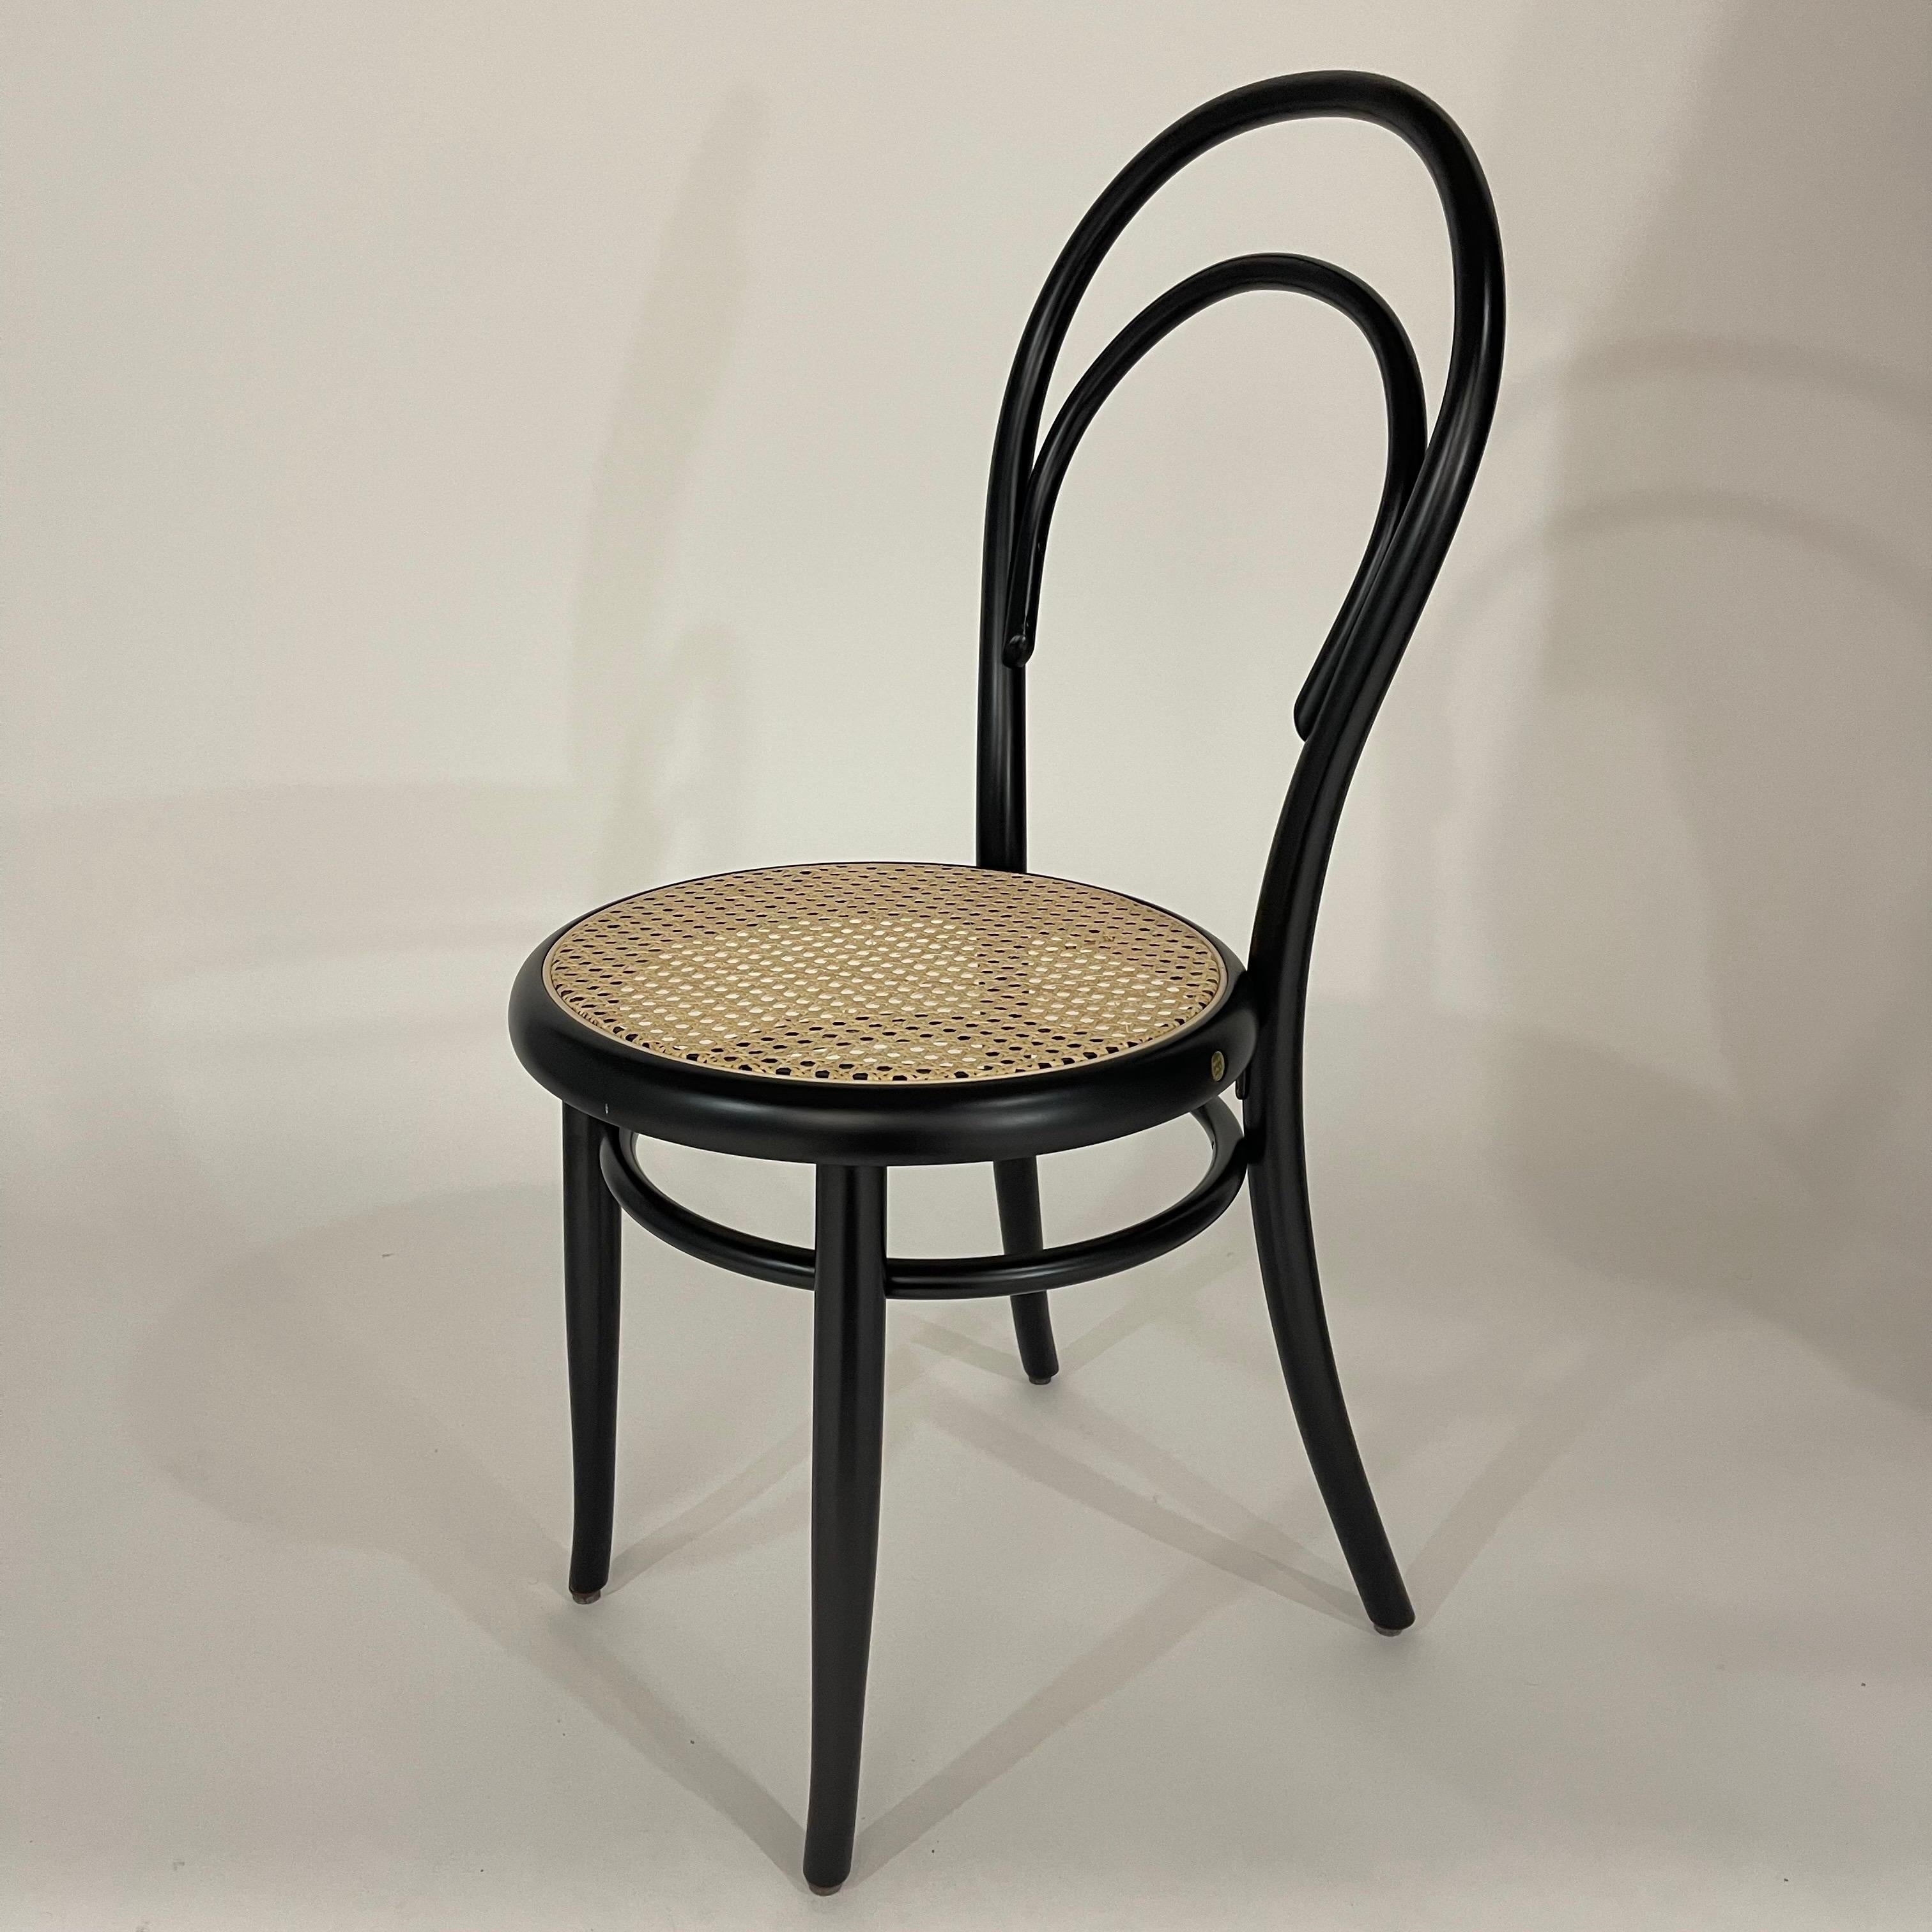 Chaise de salle à manger ou chaise d'appoint iconique N. 14 Bistro, conçue par Michael Thonet, en bois courbé de hêtre peint en noir, avec une assise en osier tressé.  Autriche